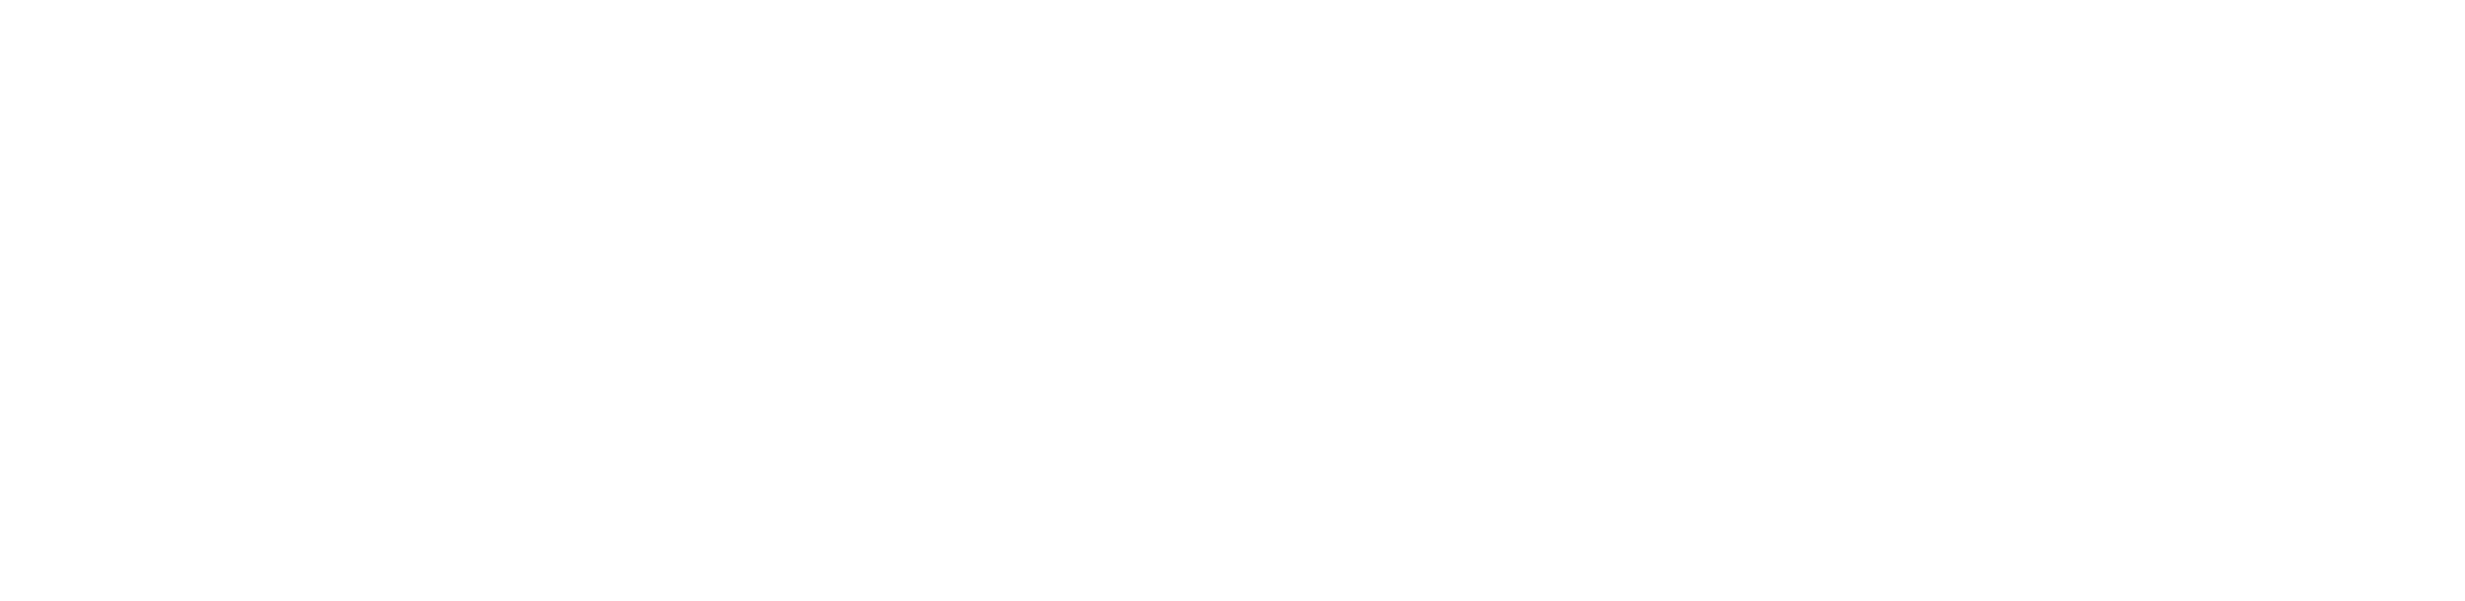 Black Supreme Logo PNG Image Free Download